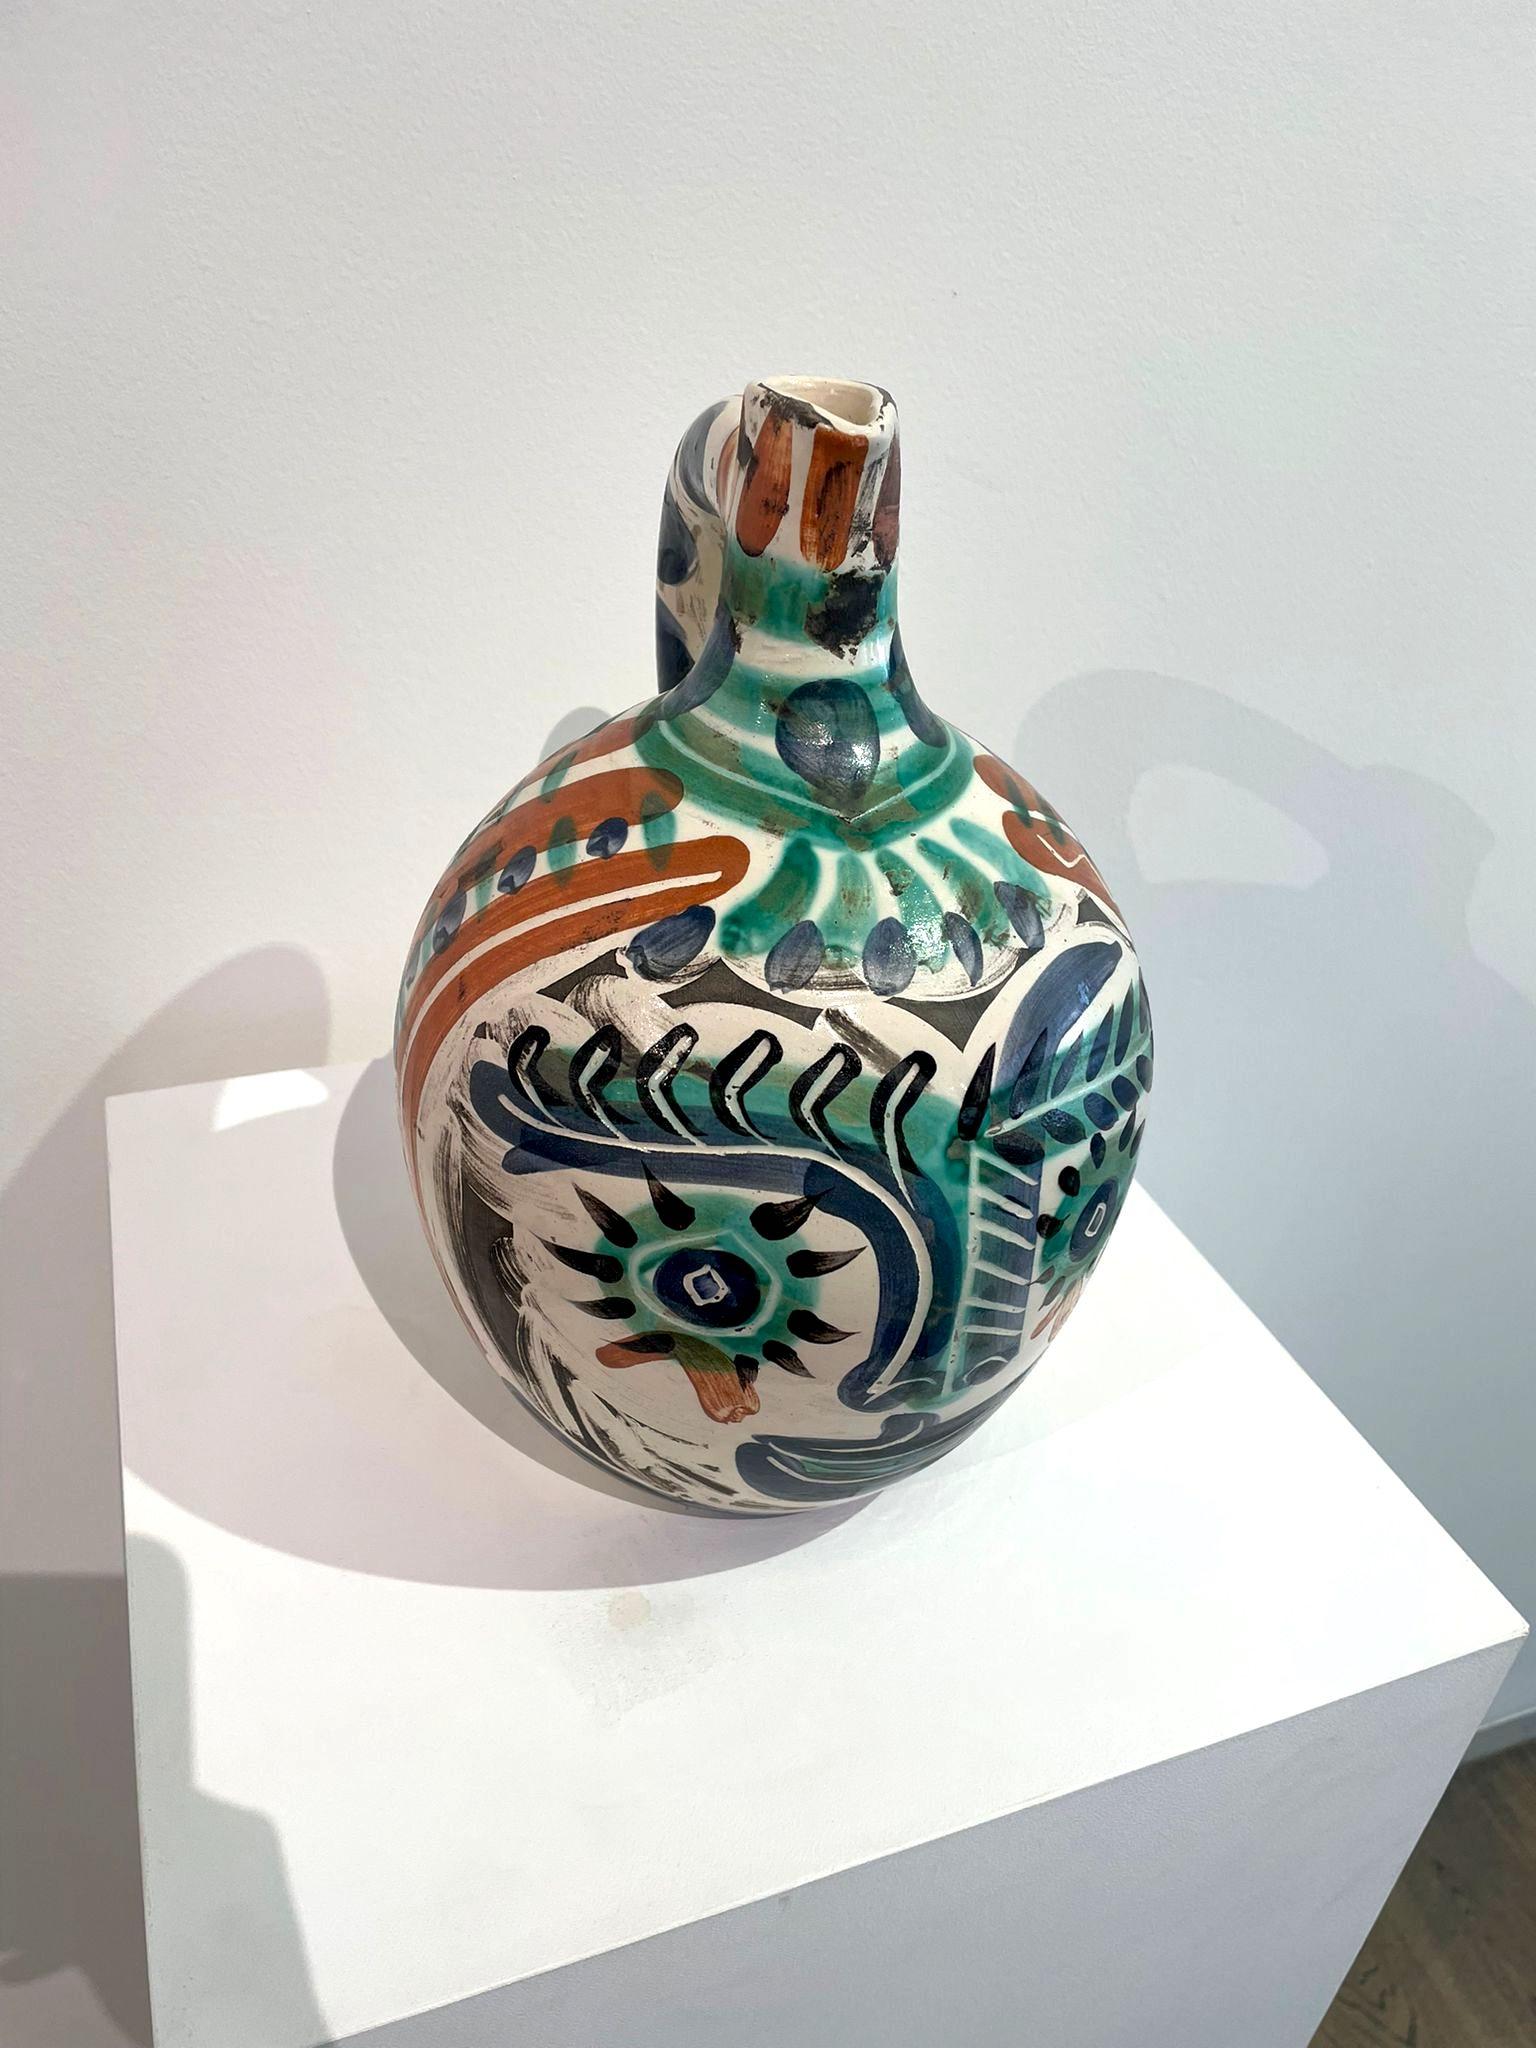 Visage aux yeux rieurs, Picasso, Multiples, 1960's, Ceramic, Jar, Pitcher, Deco - Beige Figurative Sculpture by Pablo Picasso